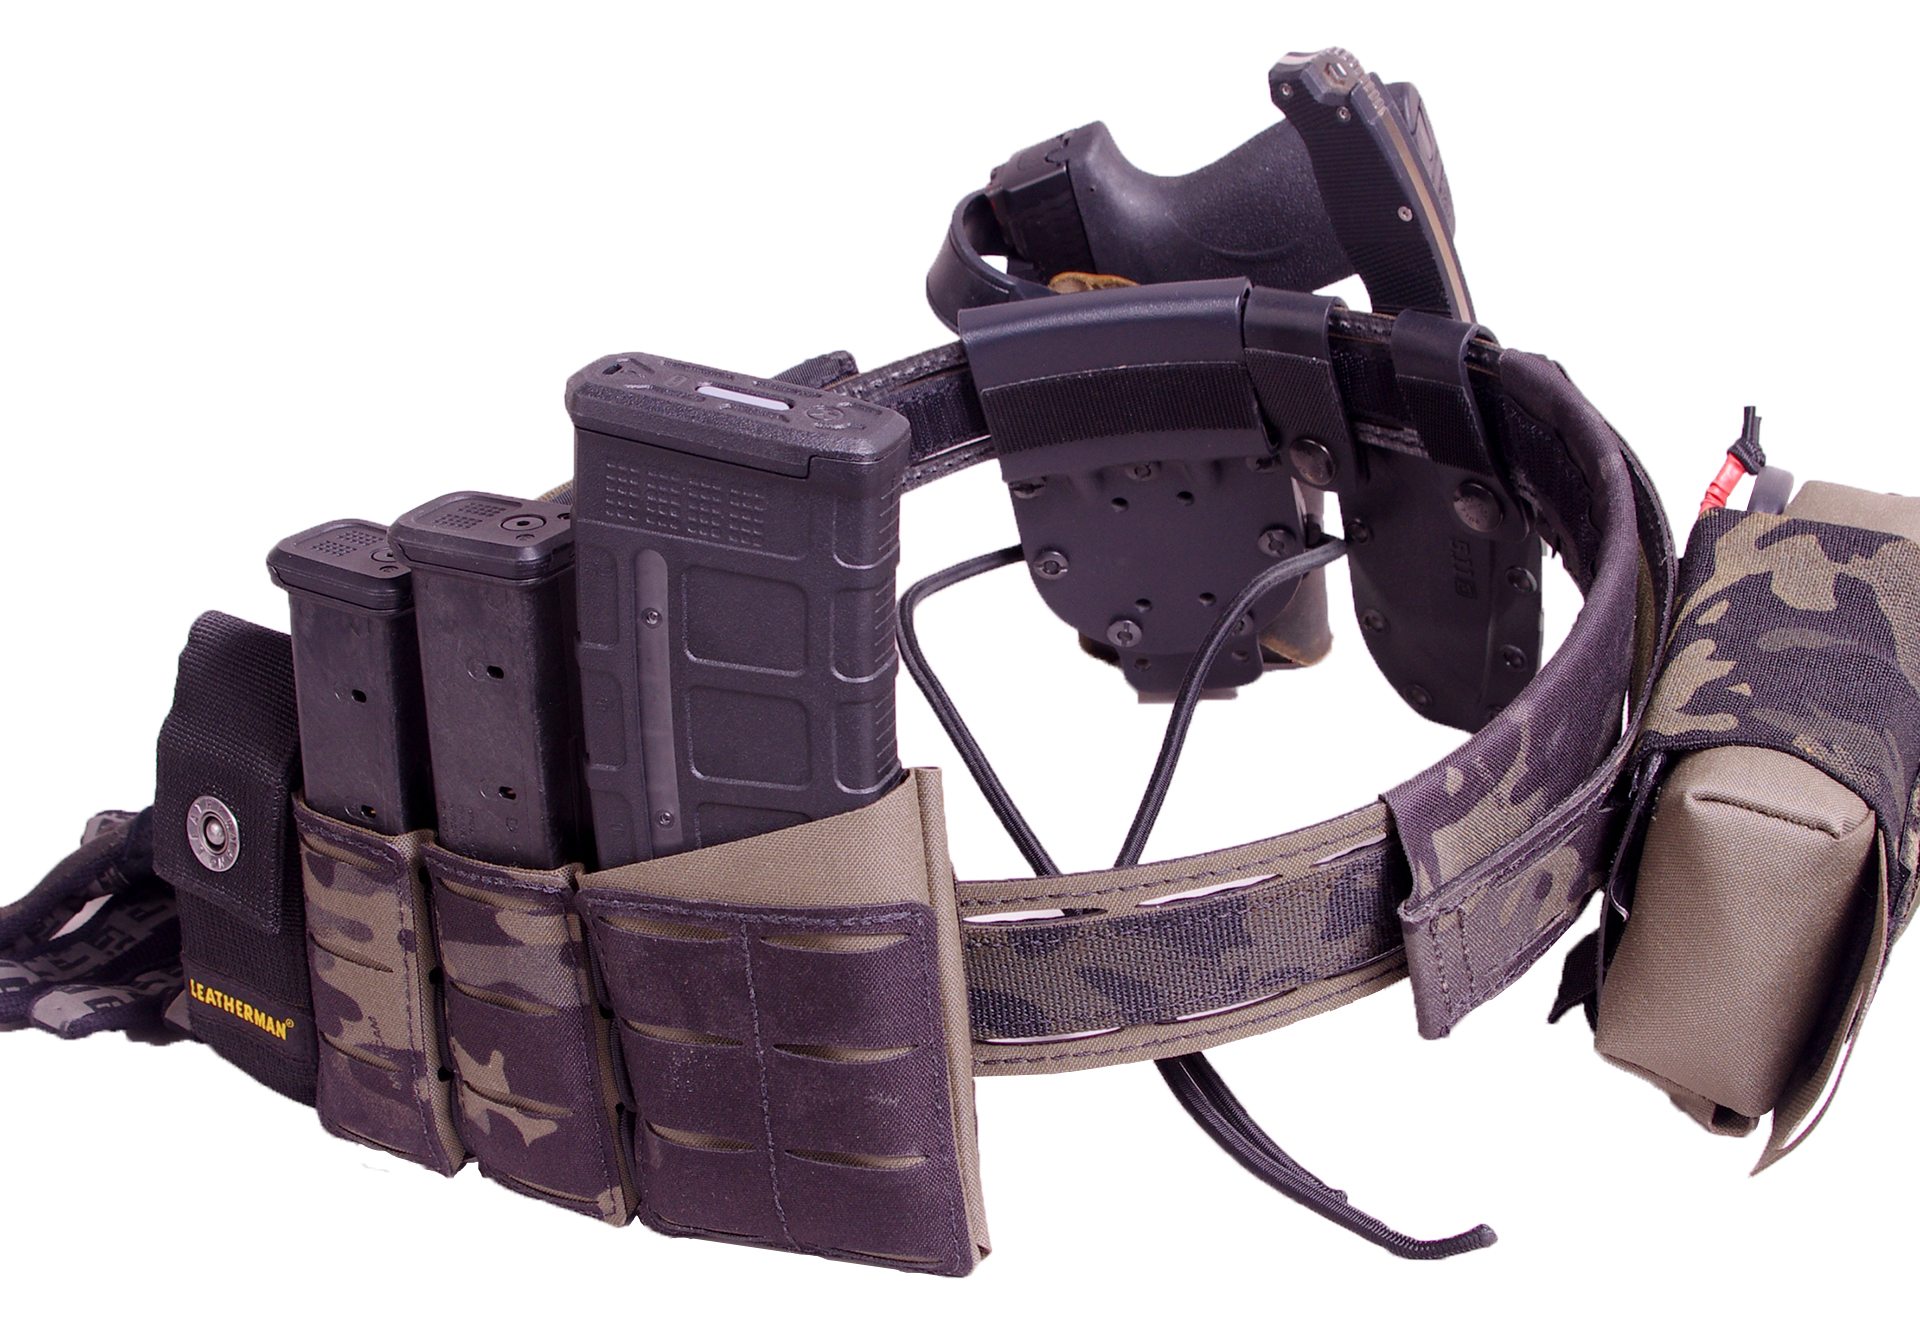 Ranger and Multicamblack gun belt goodness_clean